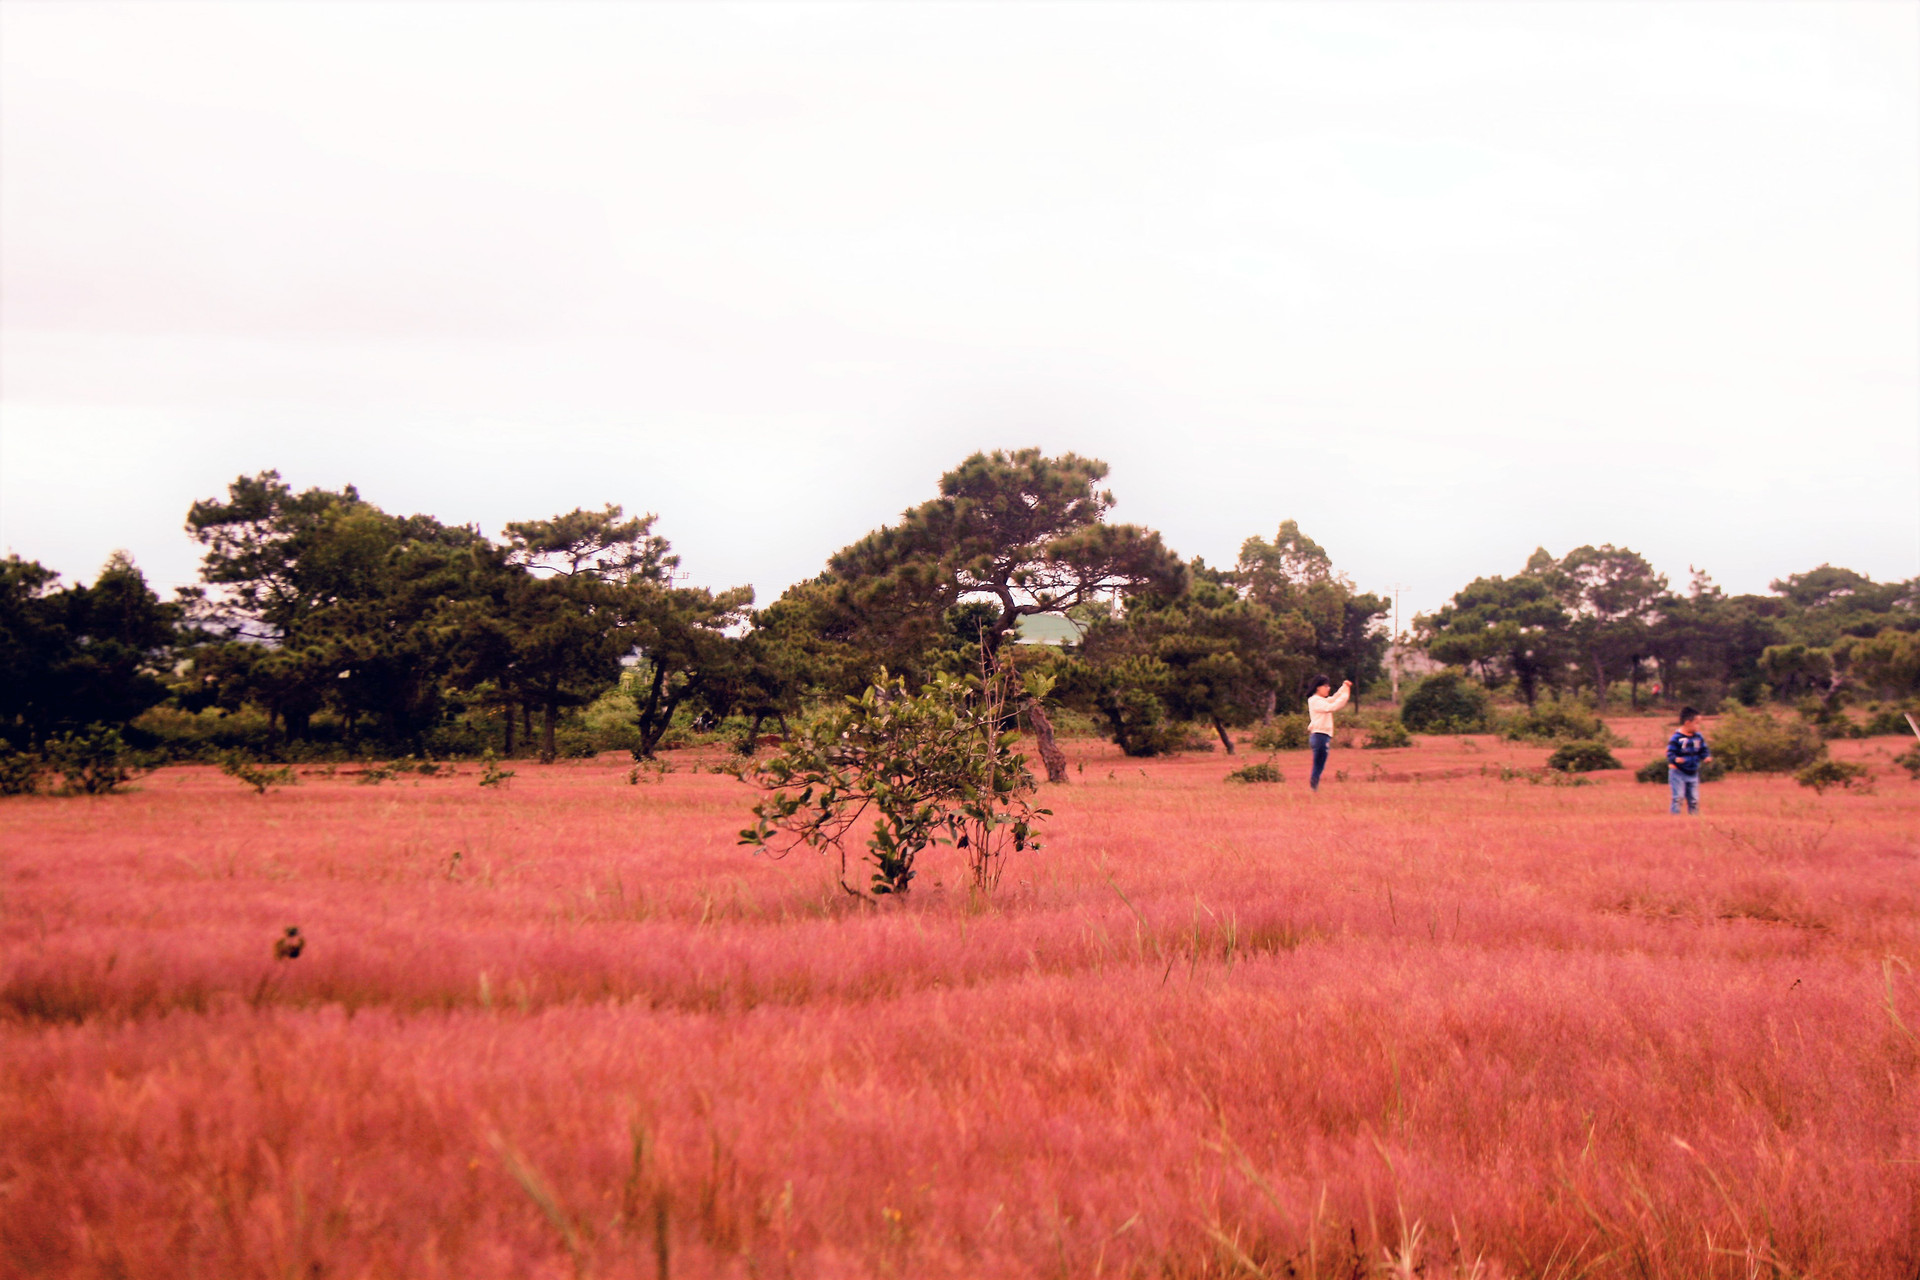 Mùa cỏ hồng hoang hoải hút chân du khách